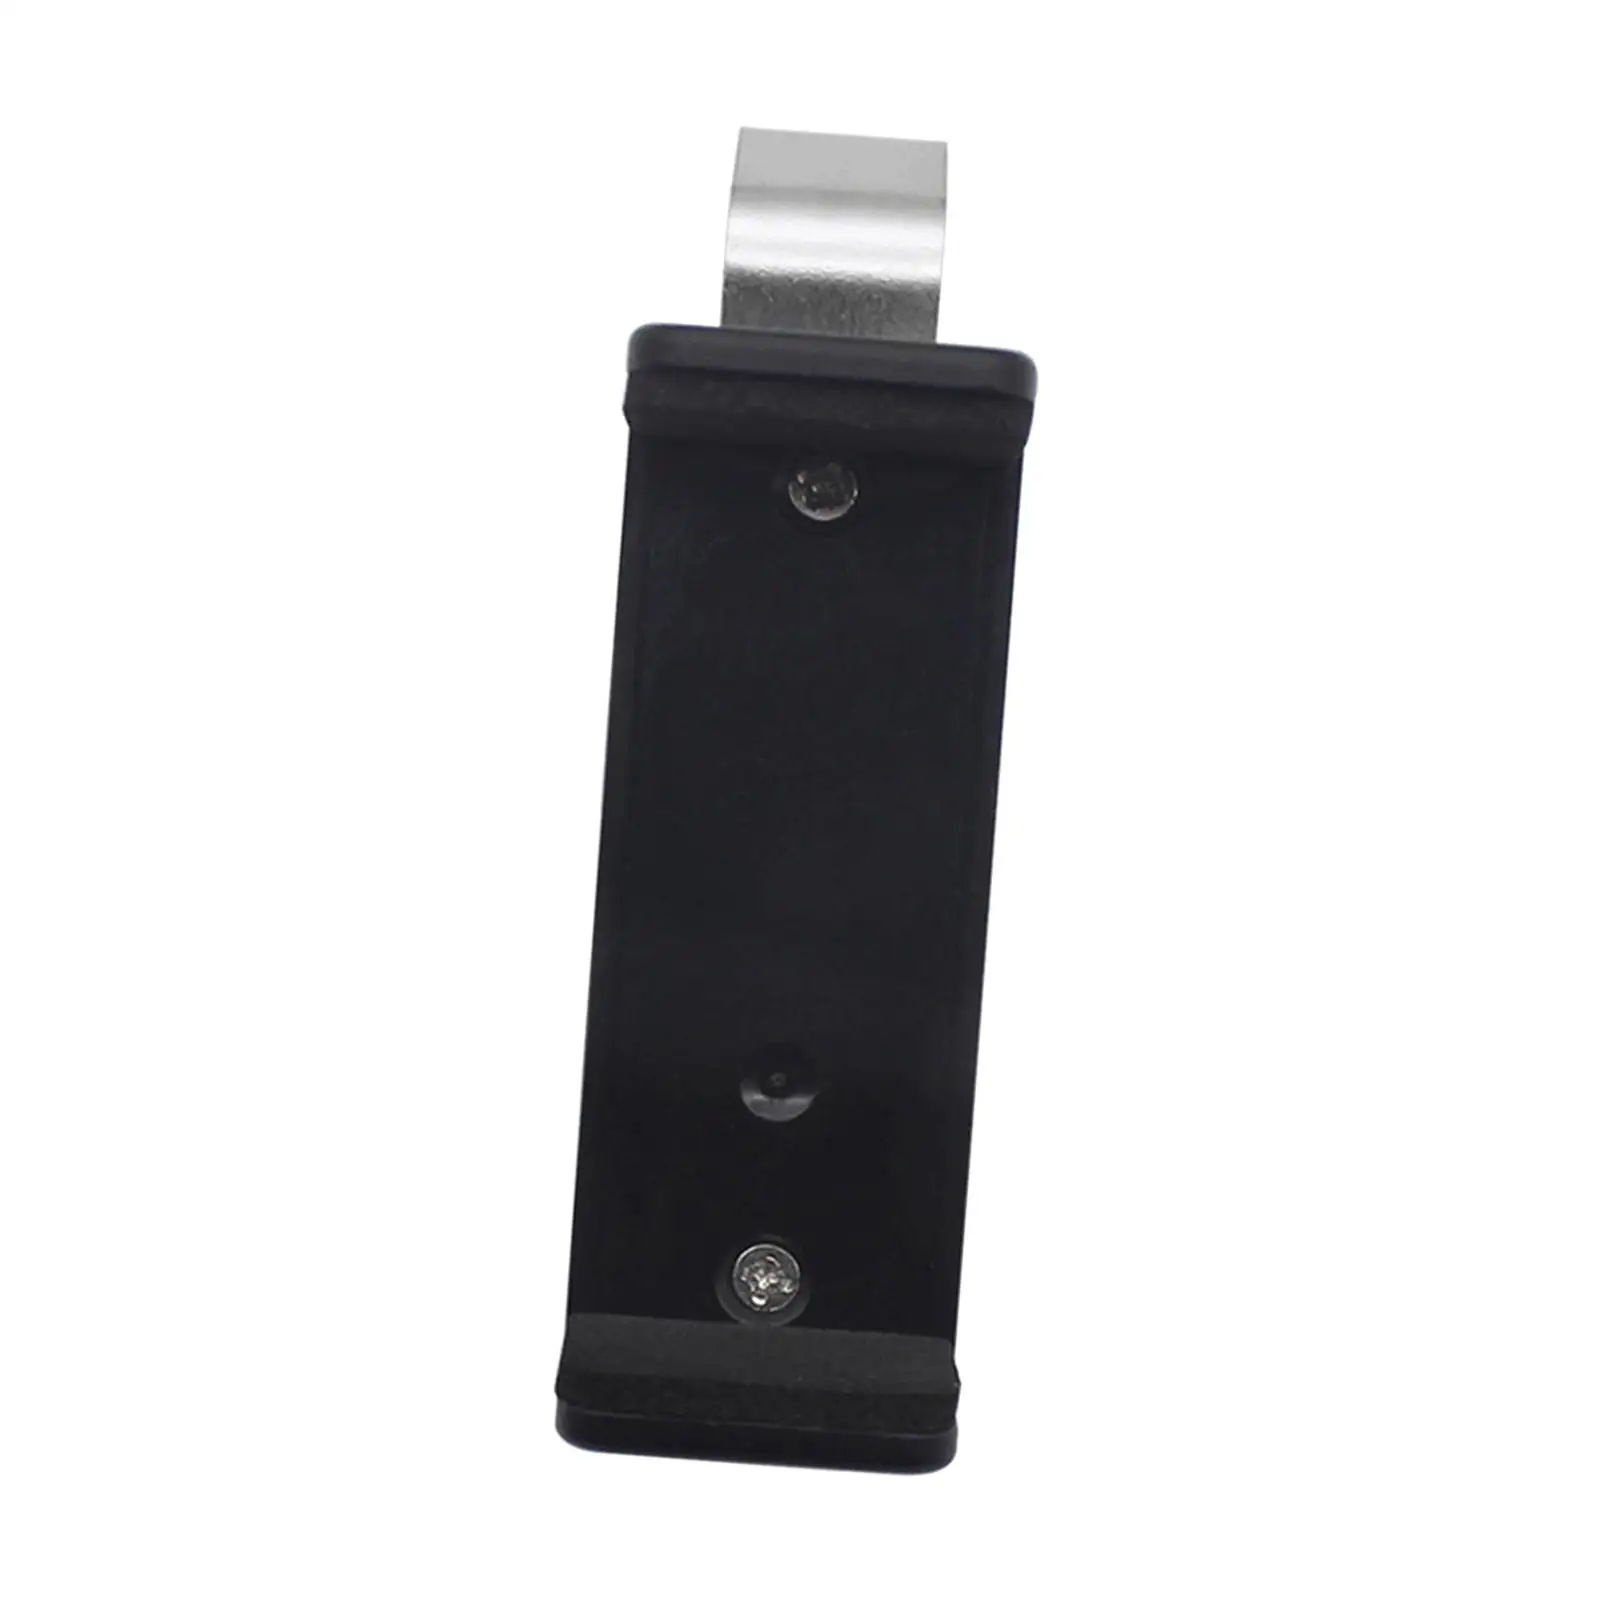 Garage Door Opener Clip Garage Remote Clip for Visor Remote Control Holder Portable 45-67mm Car Sun Visor Clip Holder Equipment